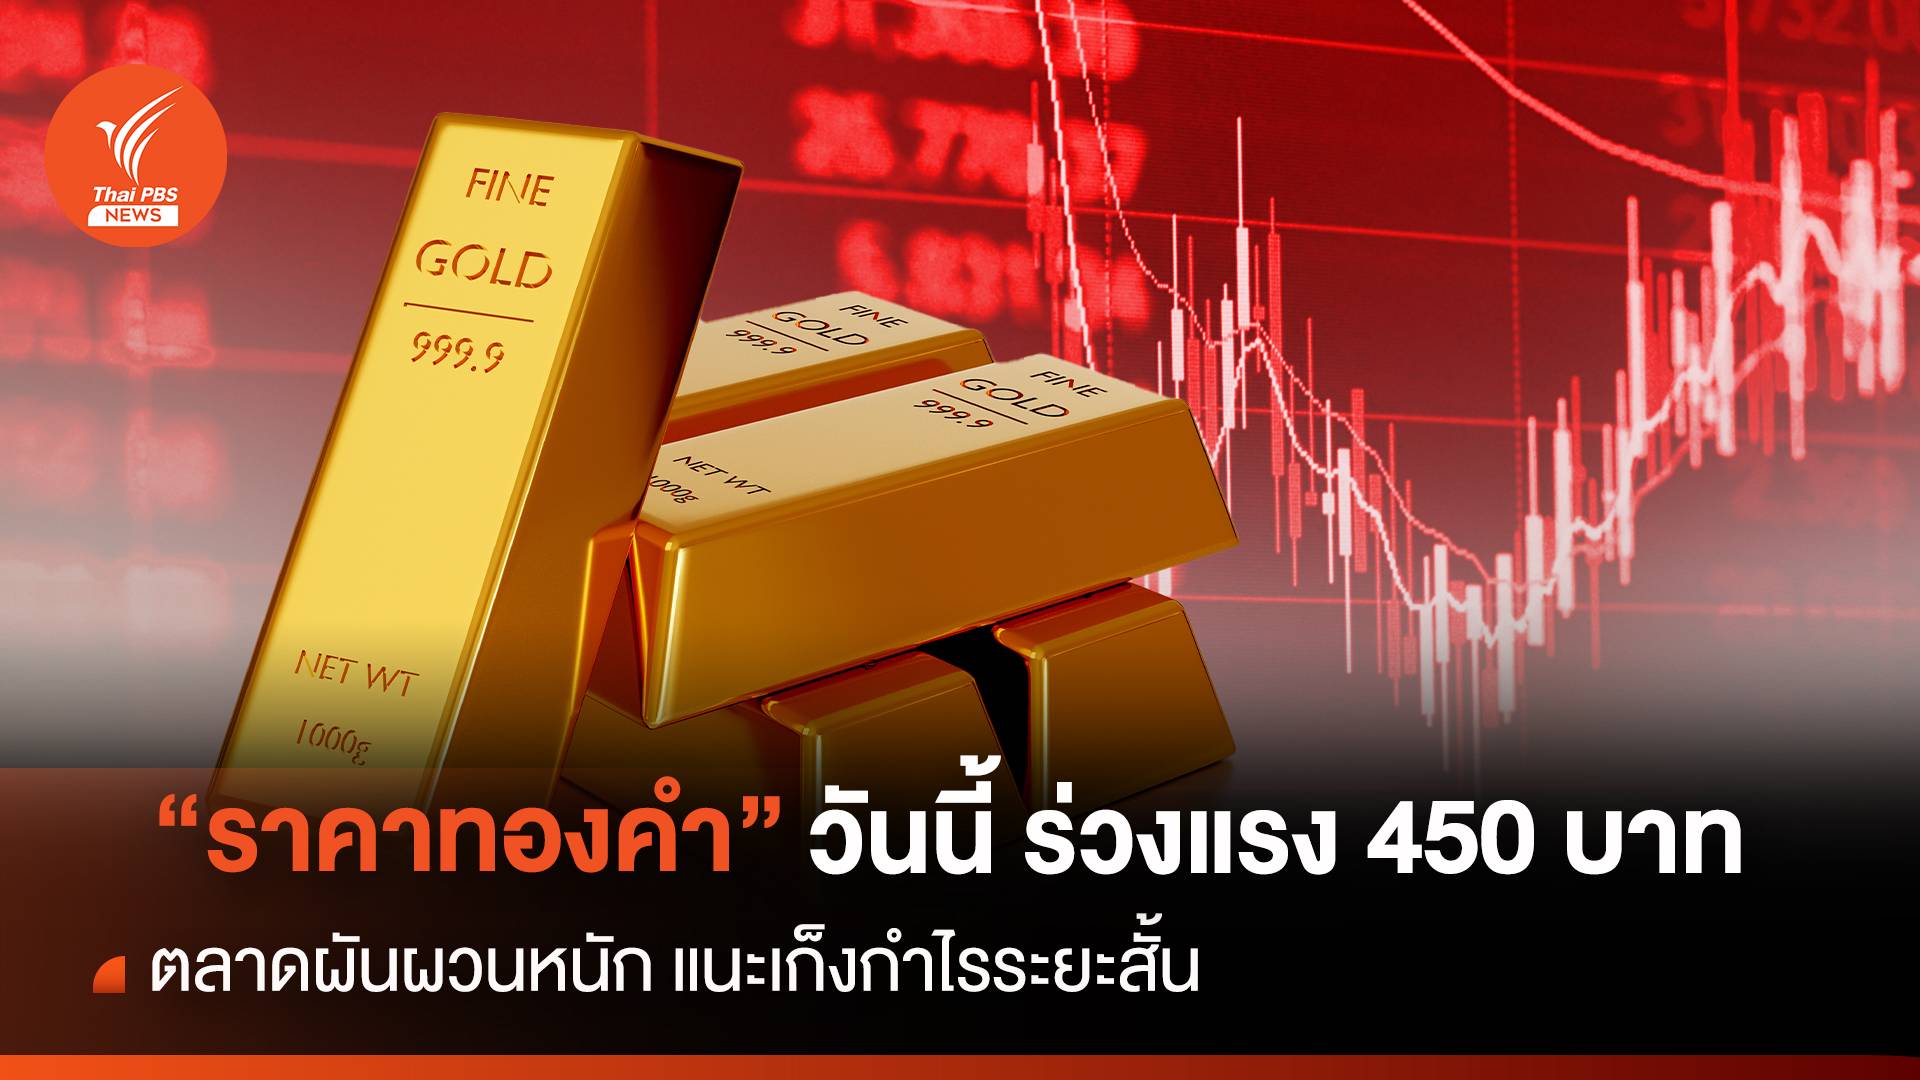 “ราคาทองคำ” วันนี้ ร่วงแรง 450 บาท ตลาดผันผวนหนัก แนะเก็งกำไรระยะสั้น